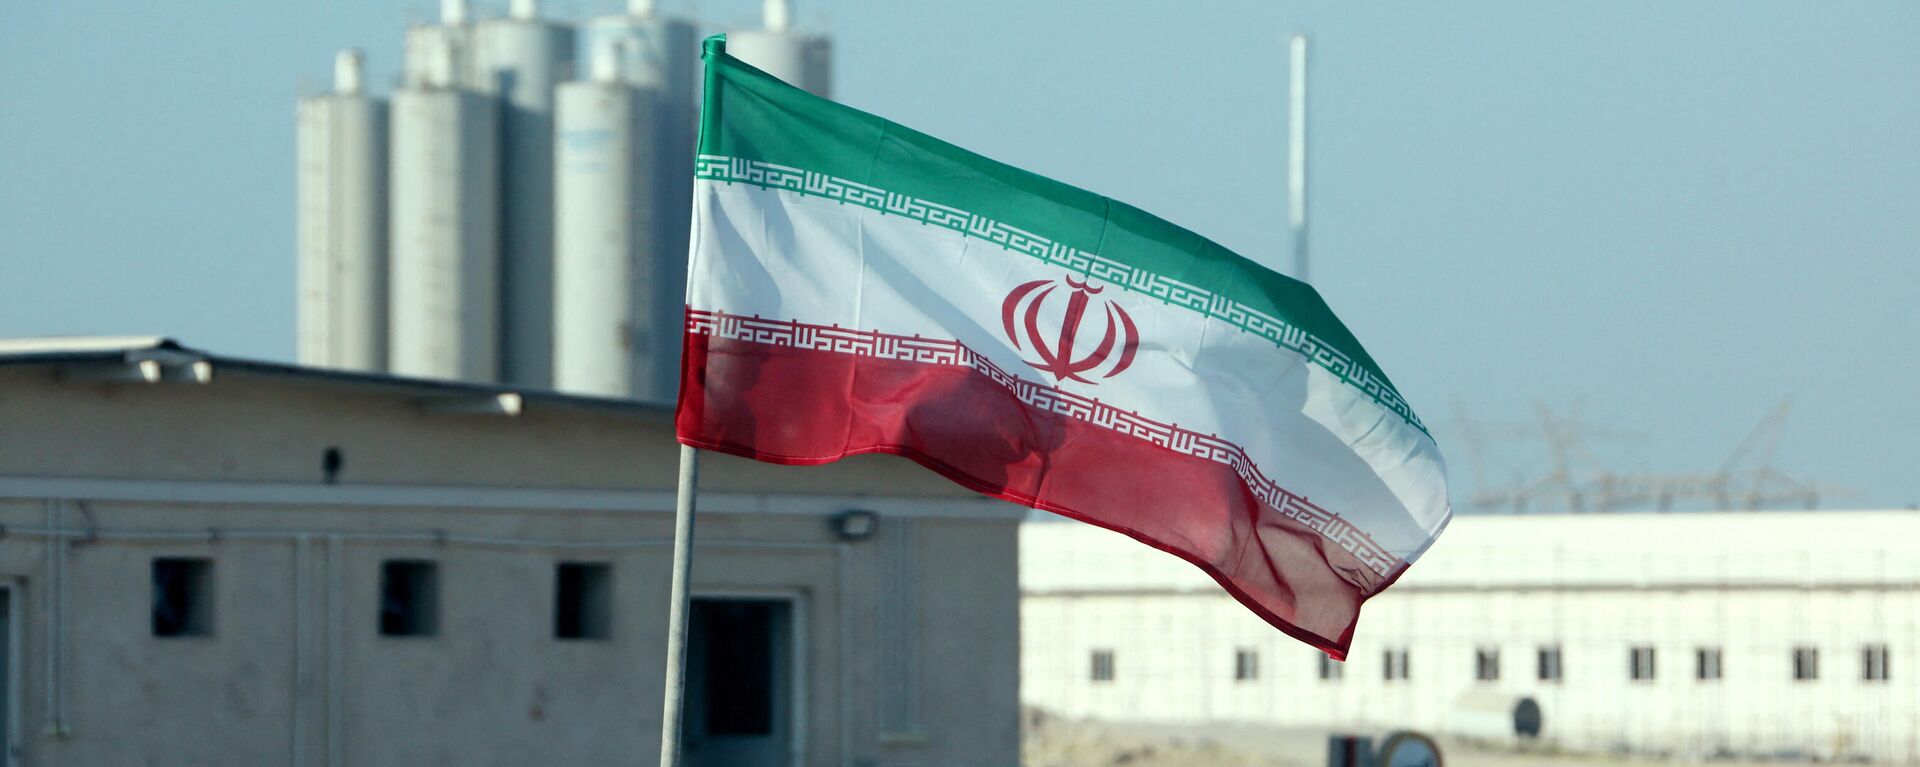 La bandera de Irán frente a una planta nuclear (archivo) - Sputnik Mundo, 1920, 03.08.2022